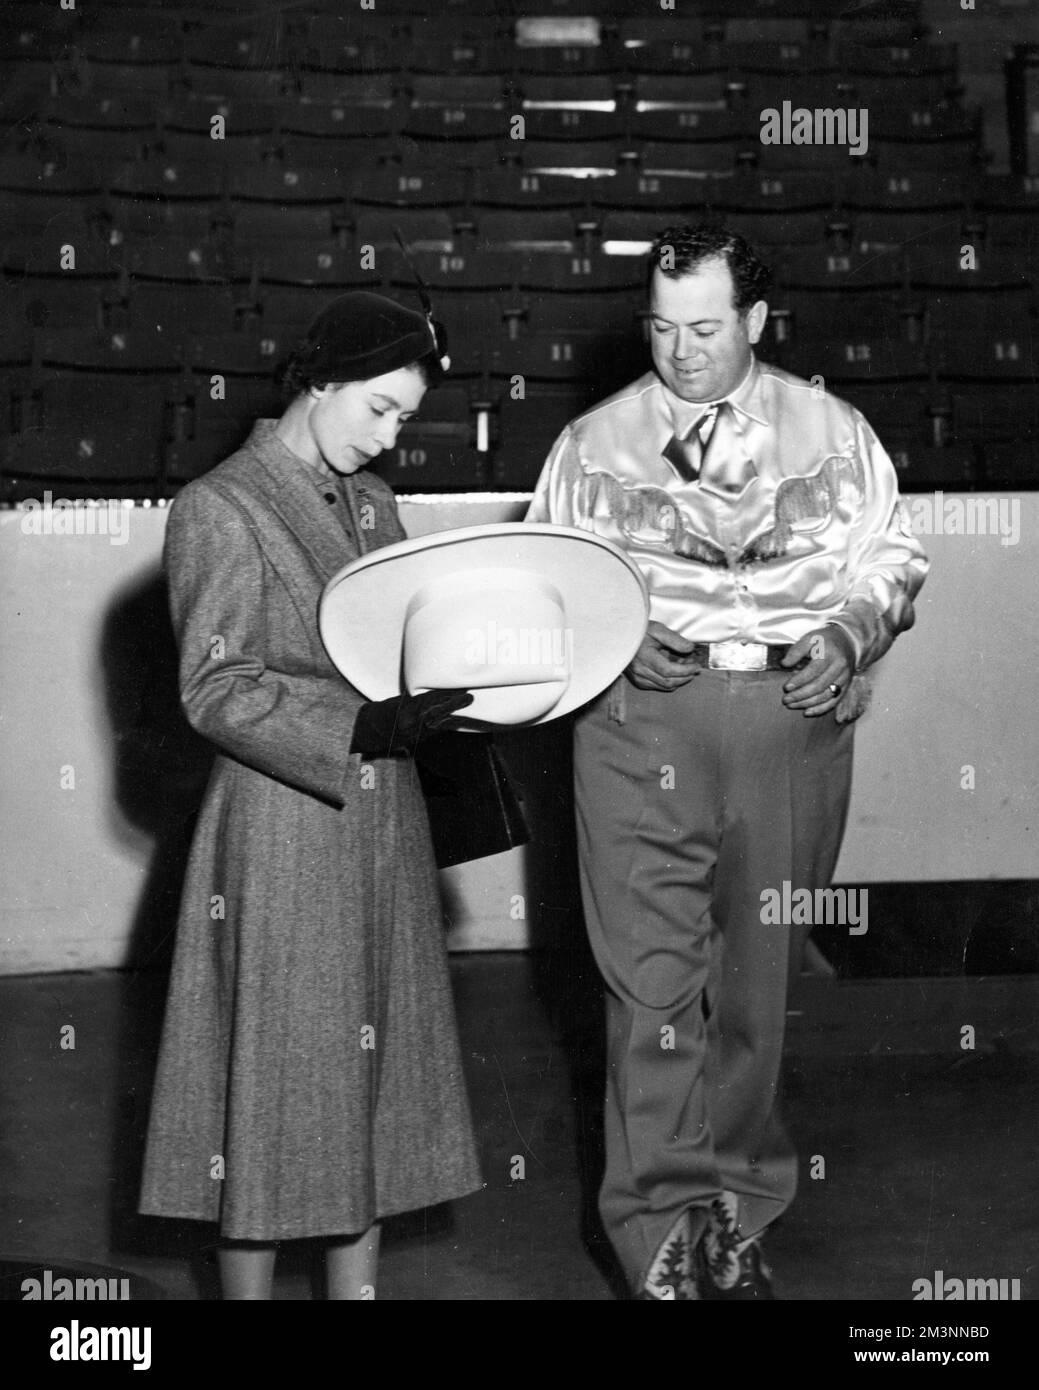 Il sindaco di Calgary (Alberta), Don Mackay, è qui visto mostrando alla principessa Elisabetta un cappello da 'dieci galloni', quando sua altezza reale e il Duca di Edimburgo (che è stato presentato con, e indossato, un cappello da 'dieci galloni'), hanno visitato Calgary per assistere a un rodeo nello stadio. Data: 1951 Foto Stock